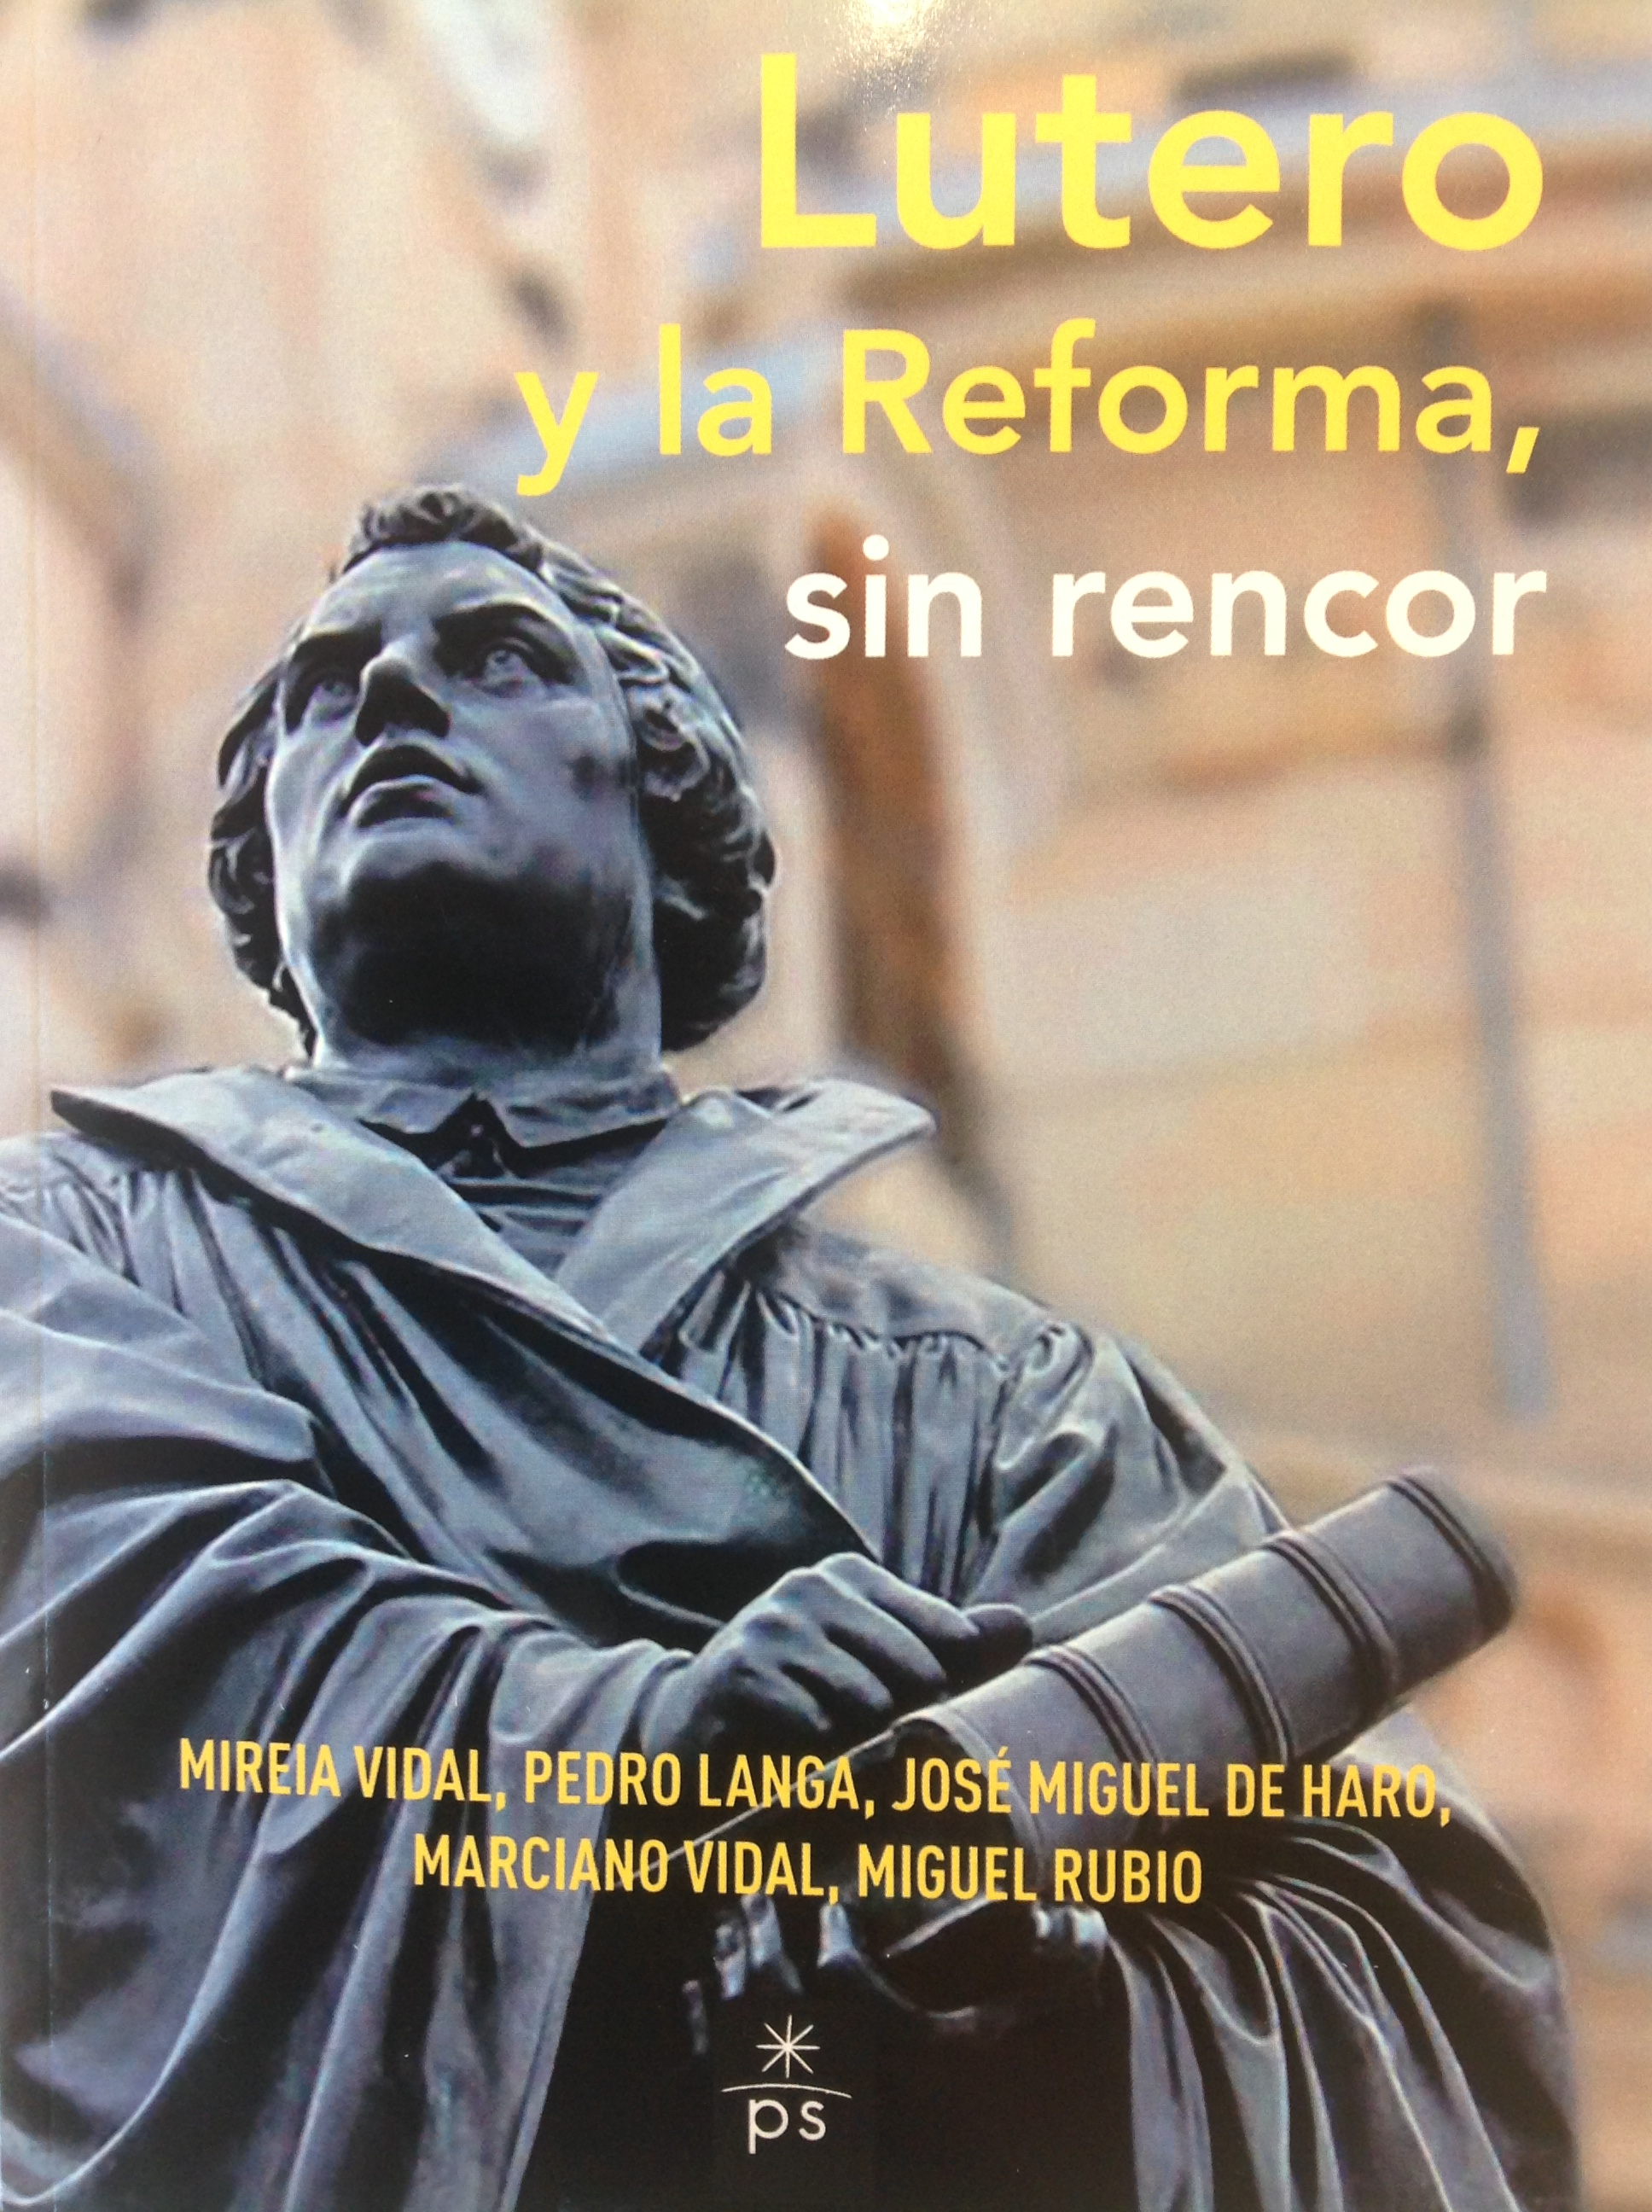 Foto de portada del libro Lutero y la Reforma, sin rencor